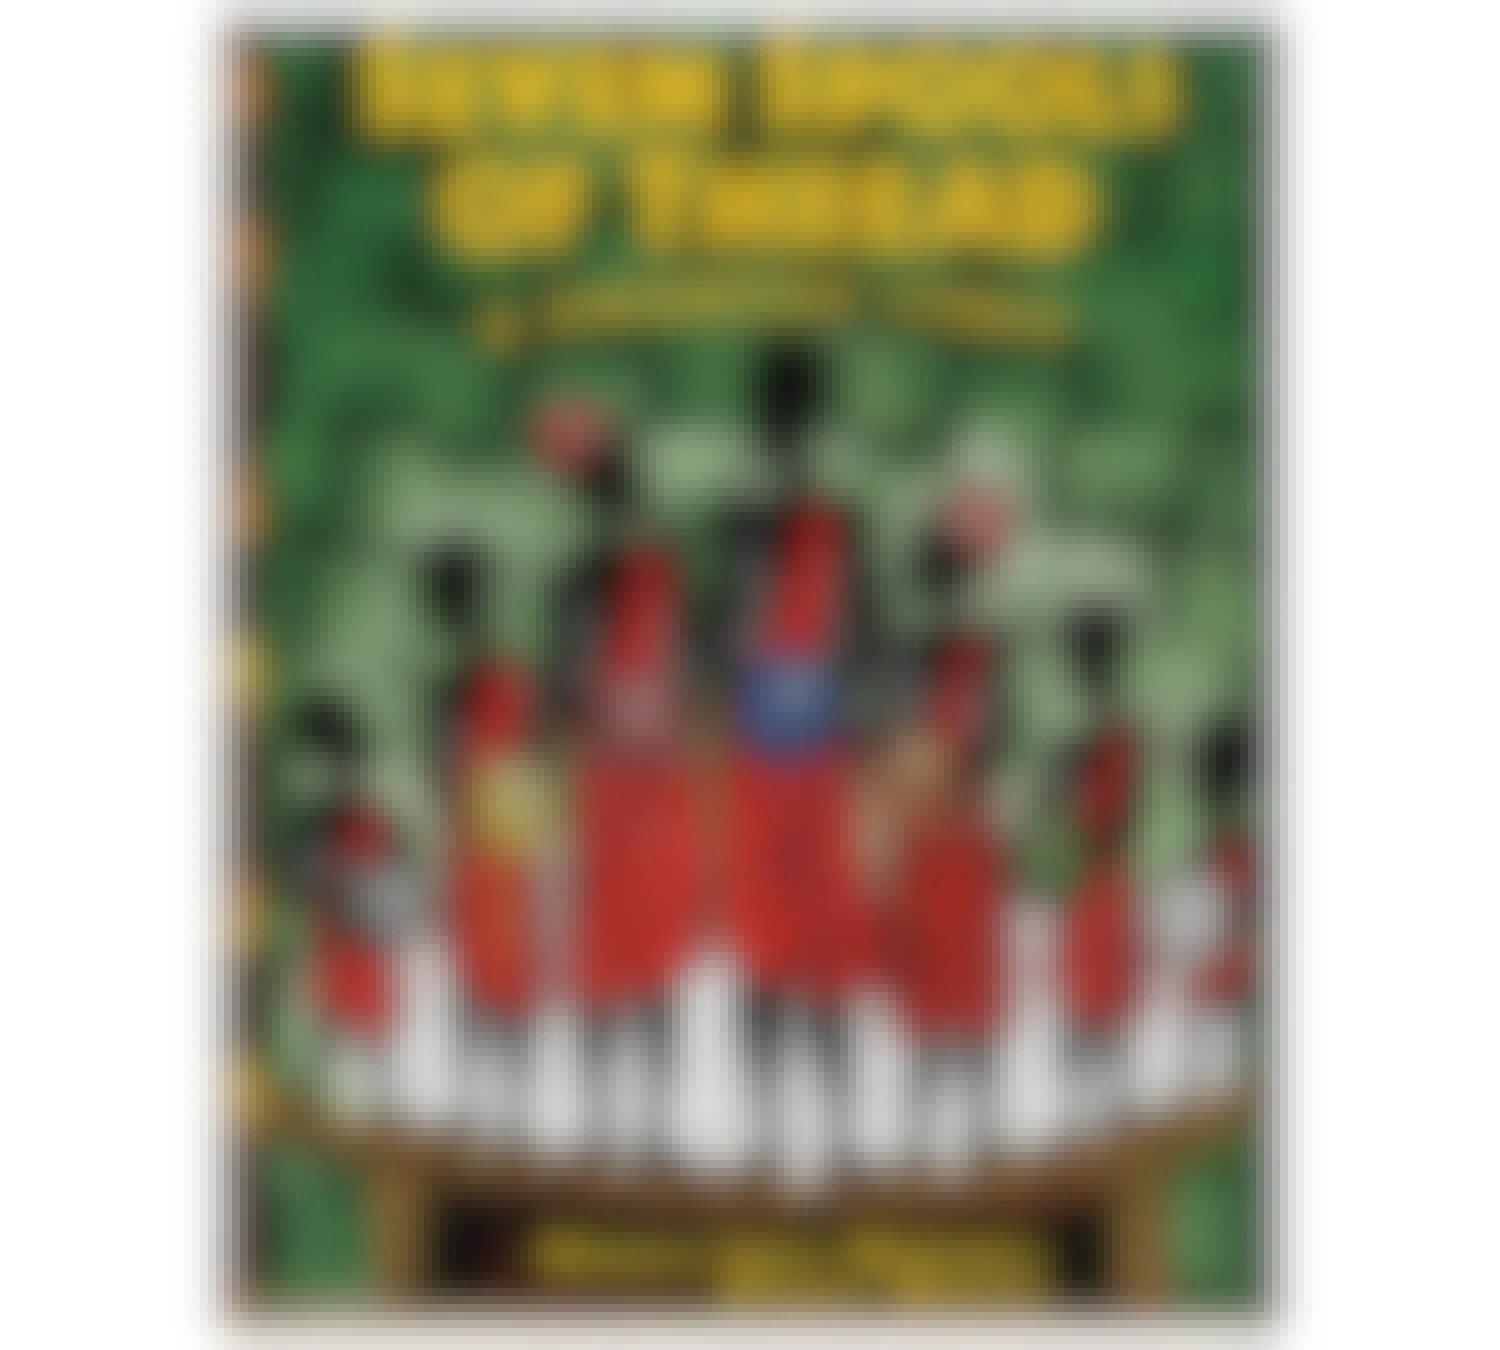 best kwanzaa gifts - Seven Spools of Thread a Kwanzaa story book